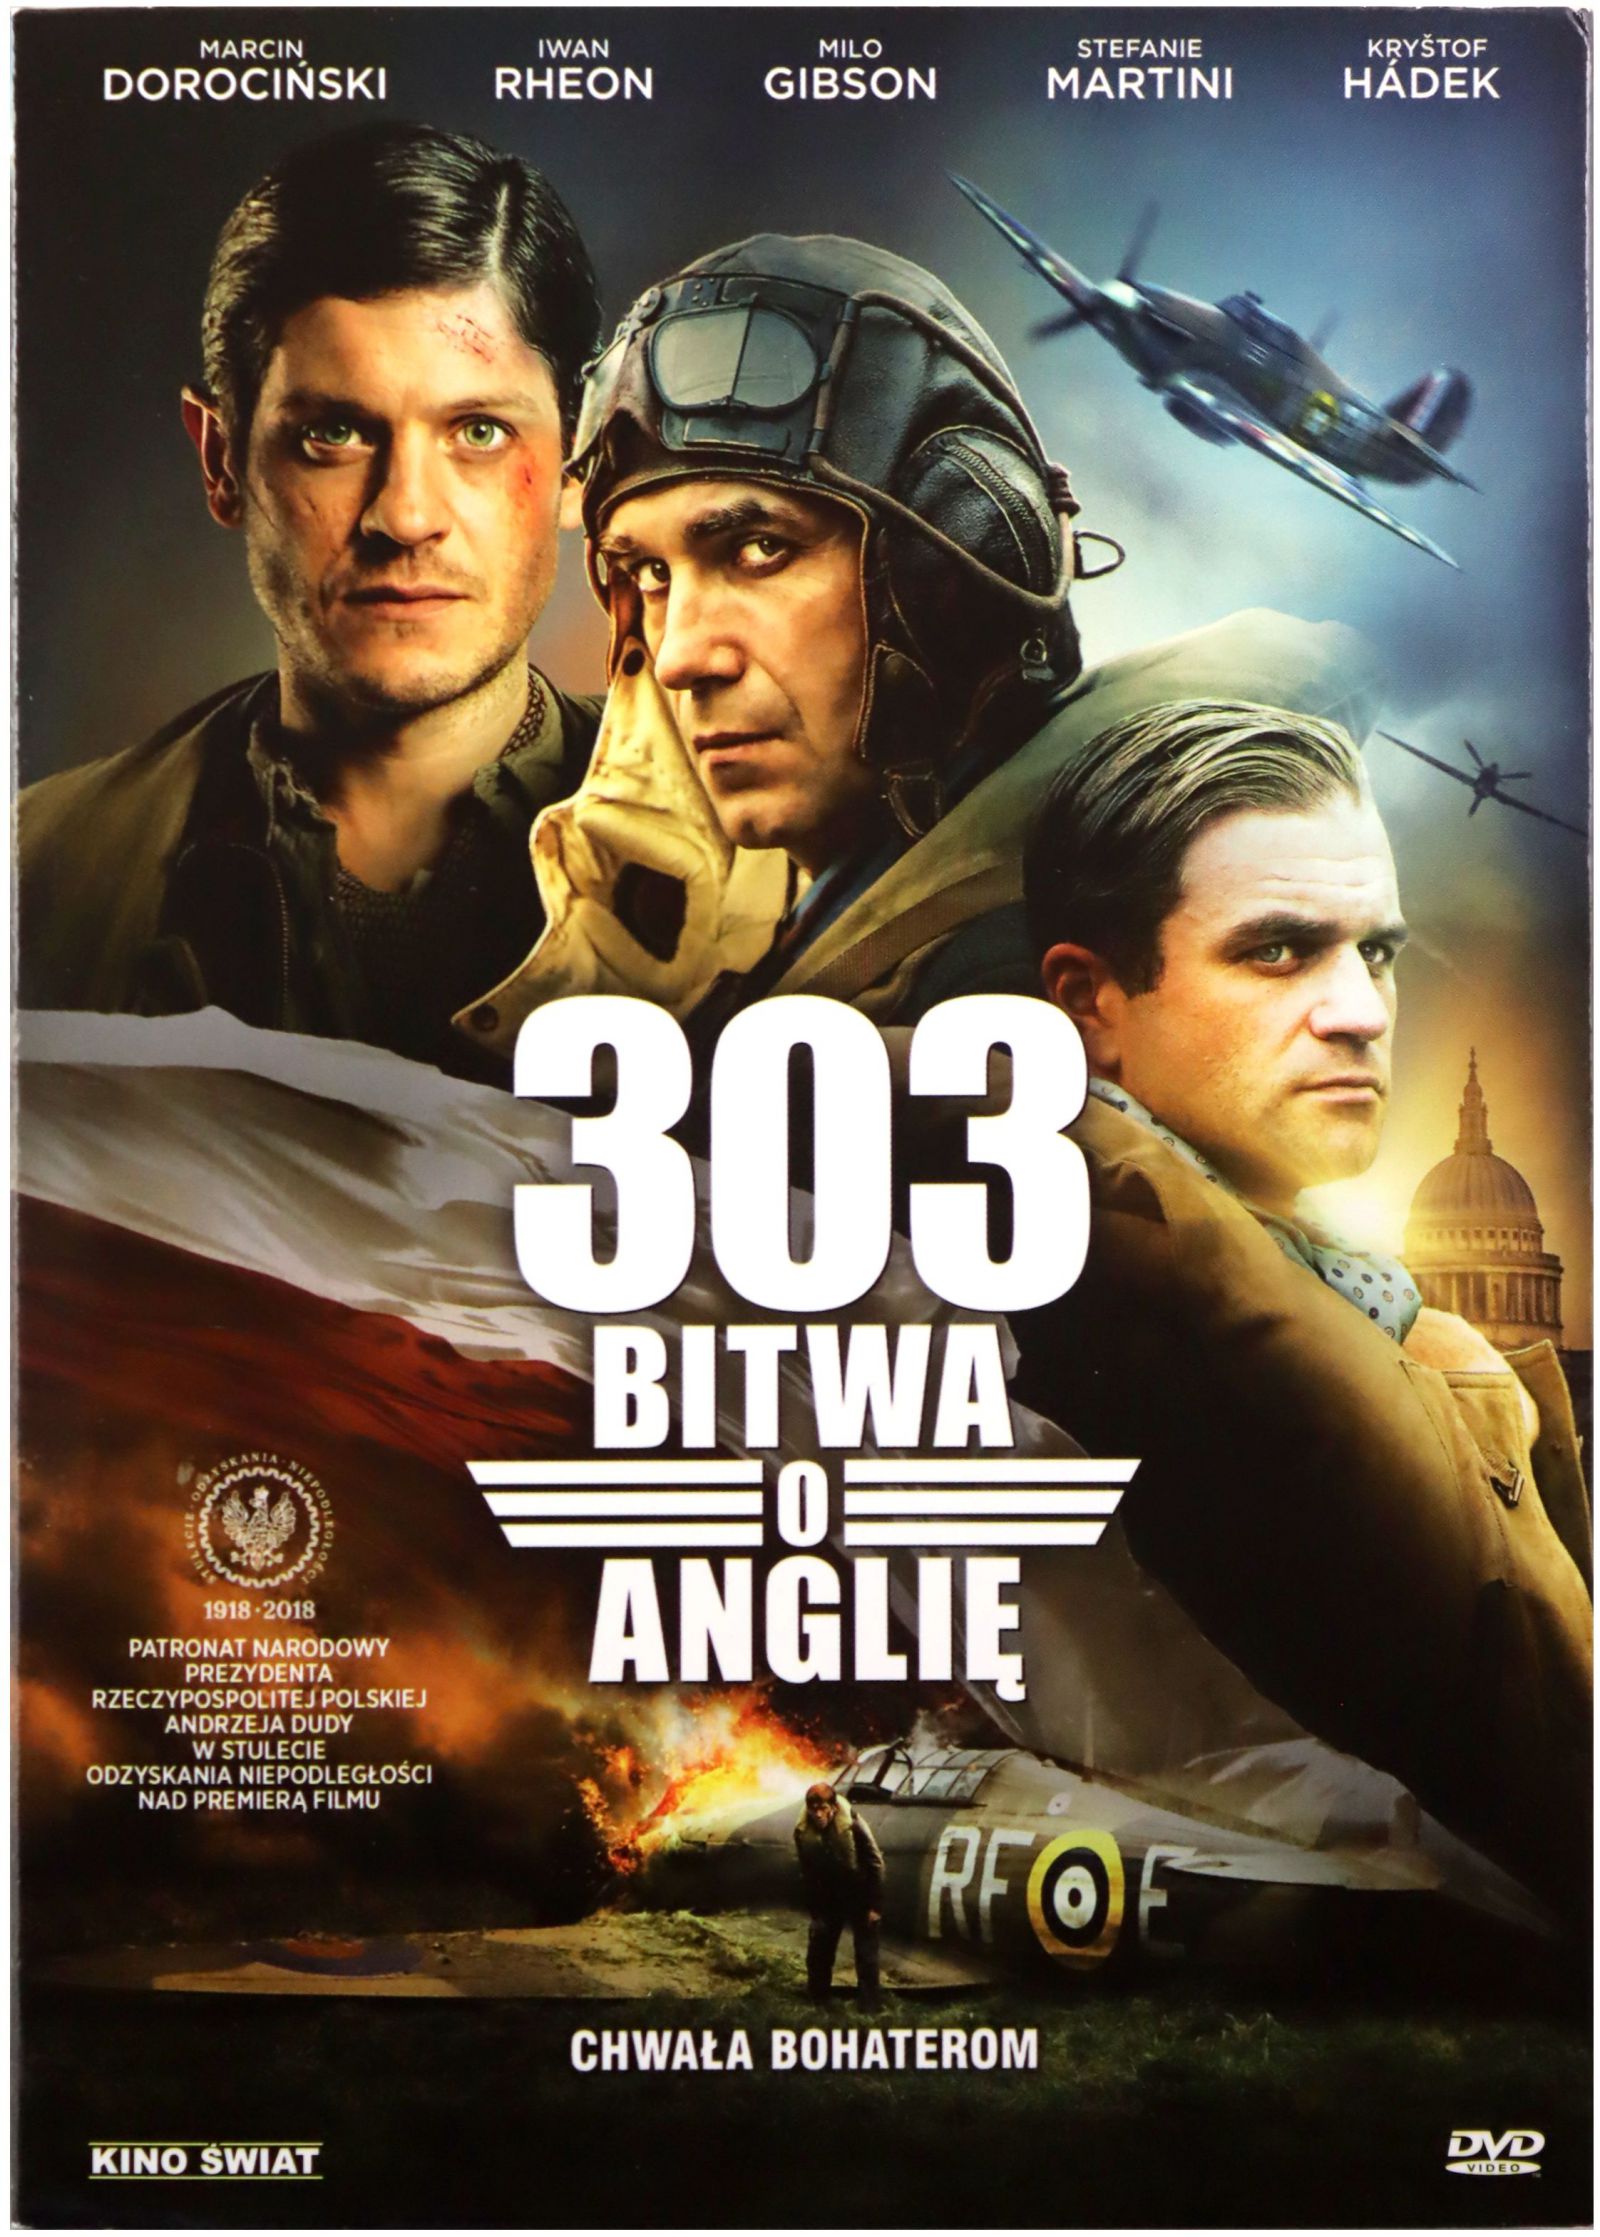 303. BITWA O ANGLIĘ [DVD] [MARCIN DOROCIŃSKI] 12262362900 - Sklepy, Opinie,  Ceny w Allegro.pl